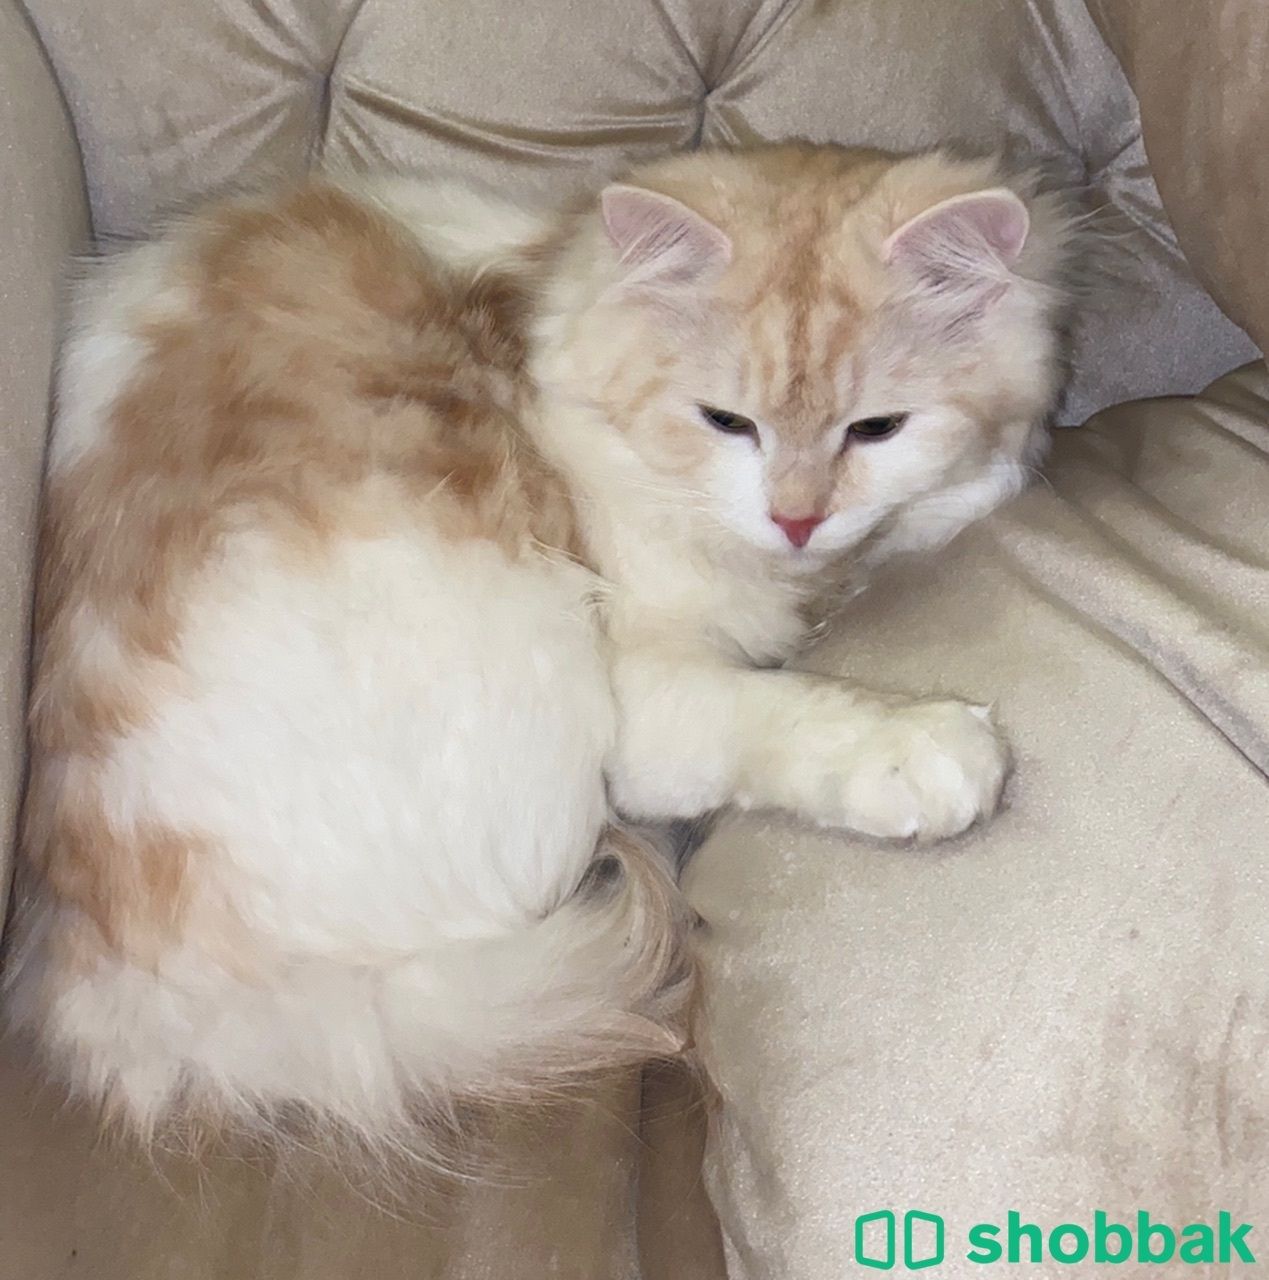 قطة جميلة هجين ام شانشيلا اب شيرازي Shobbak Saudi Arabia